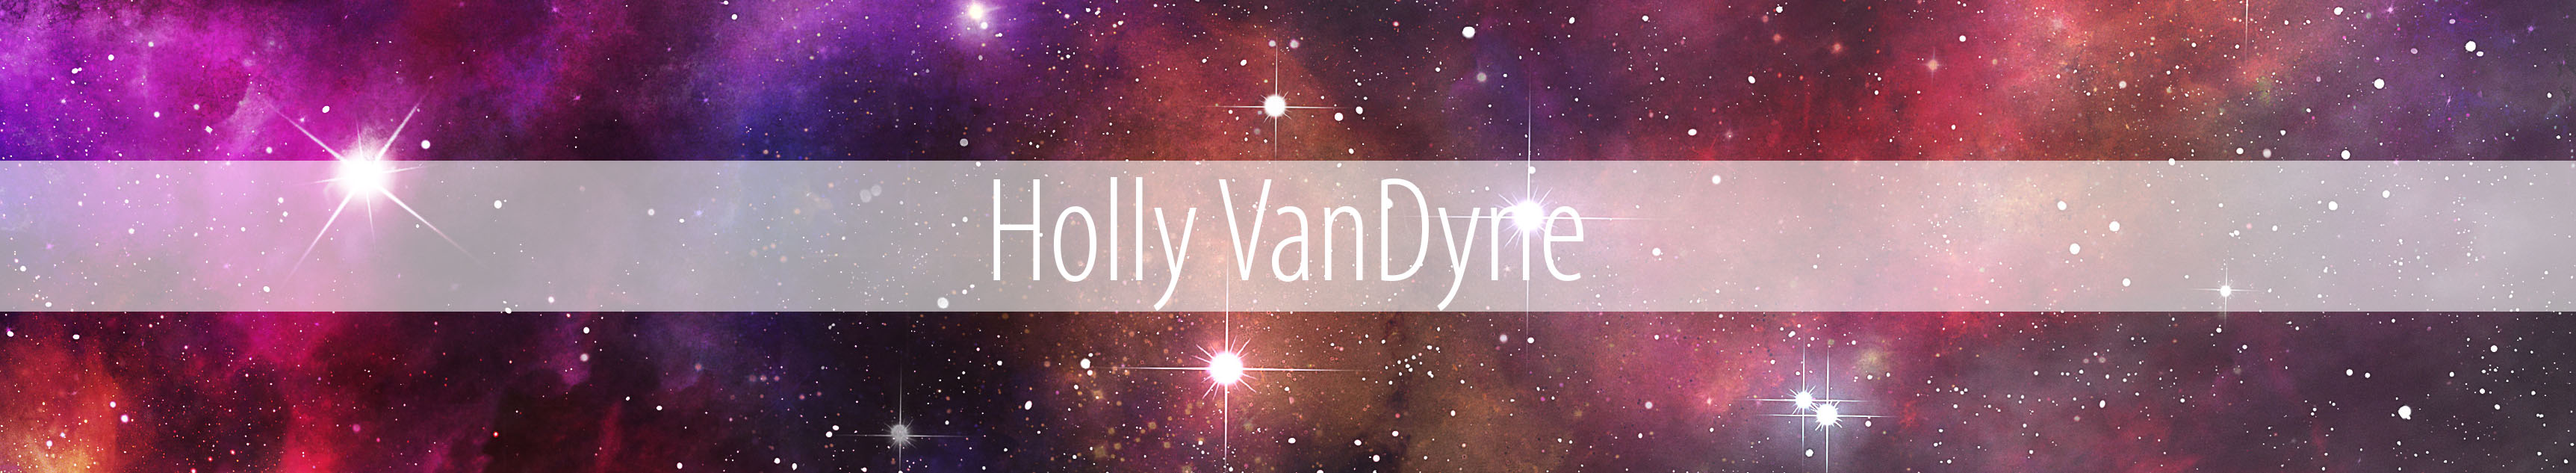 Holly VanDyne